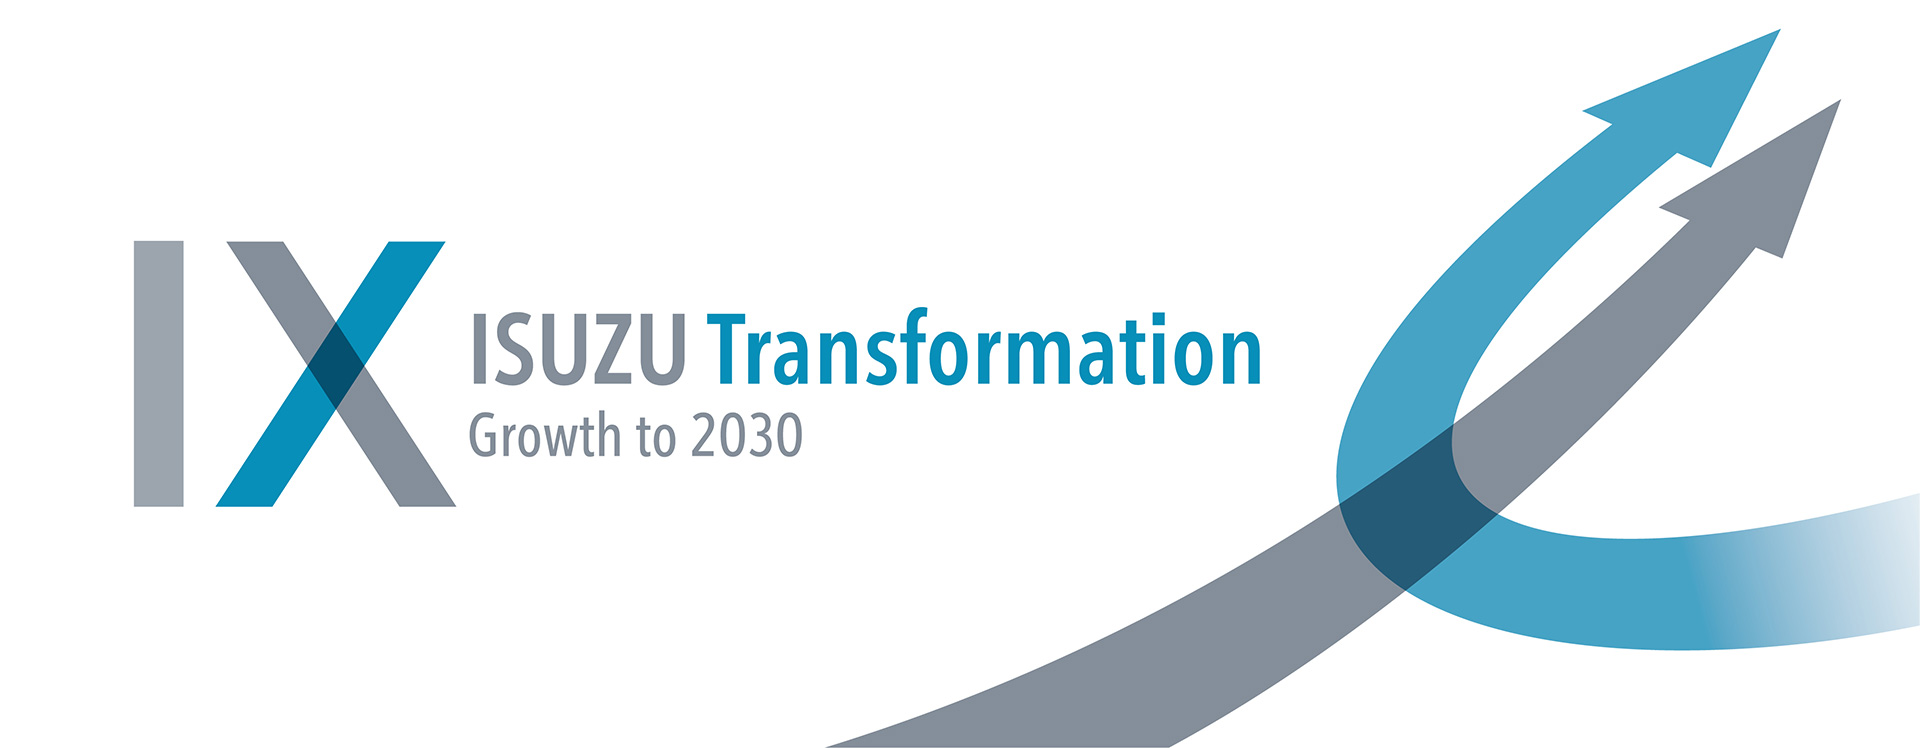 ISUZU Transformation - Growth to 2030